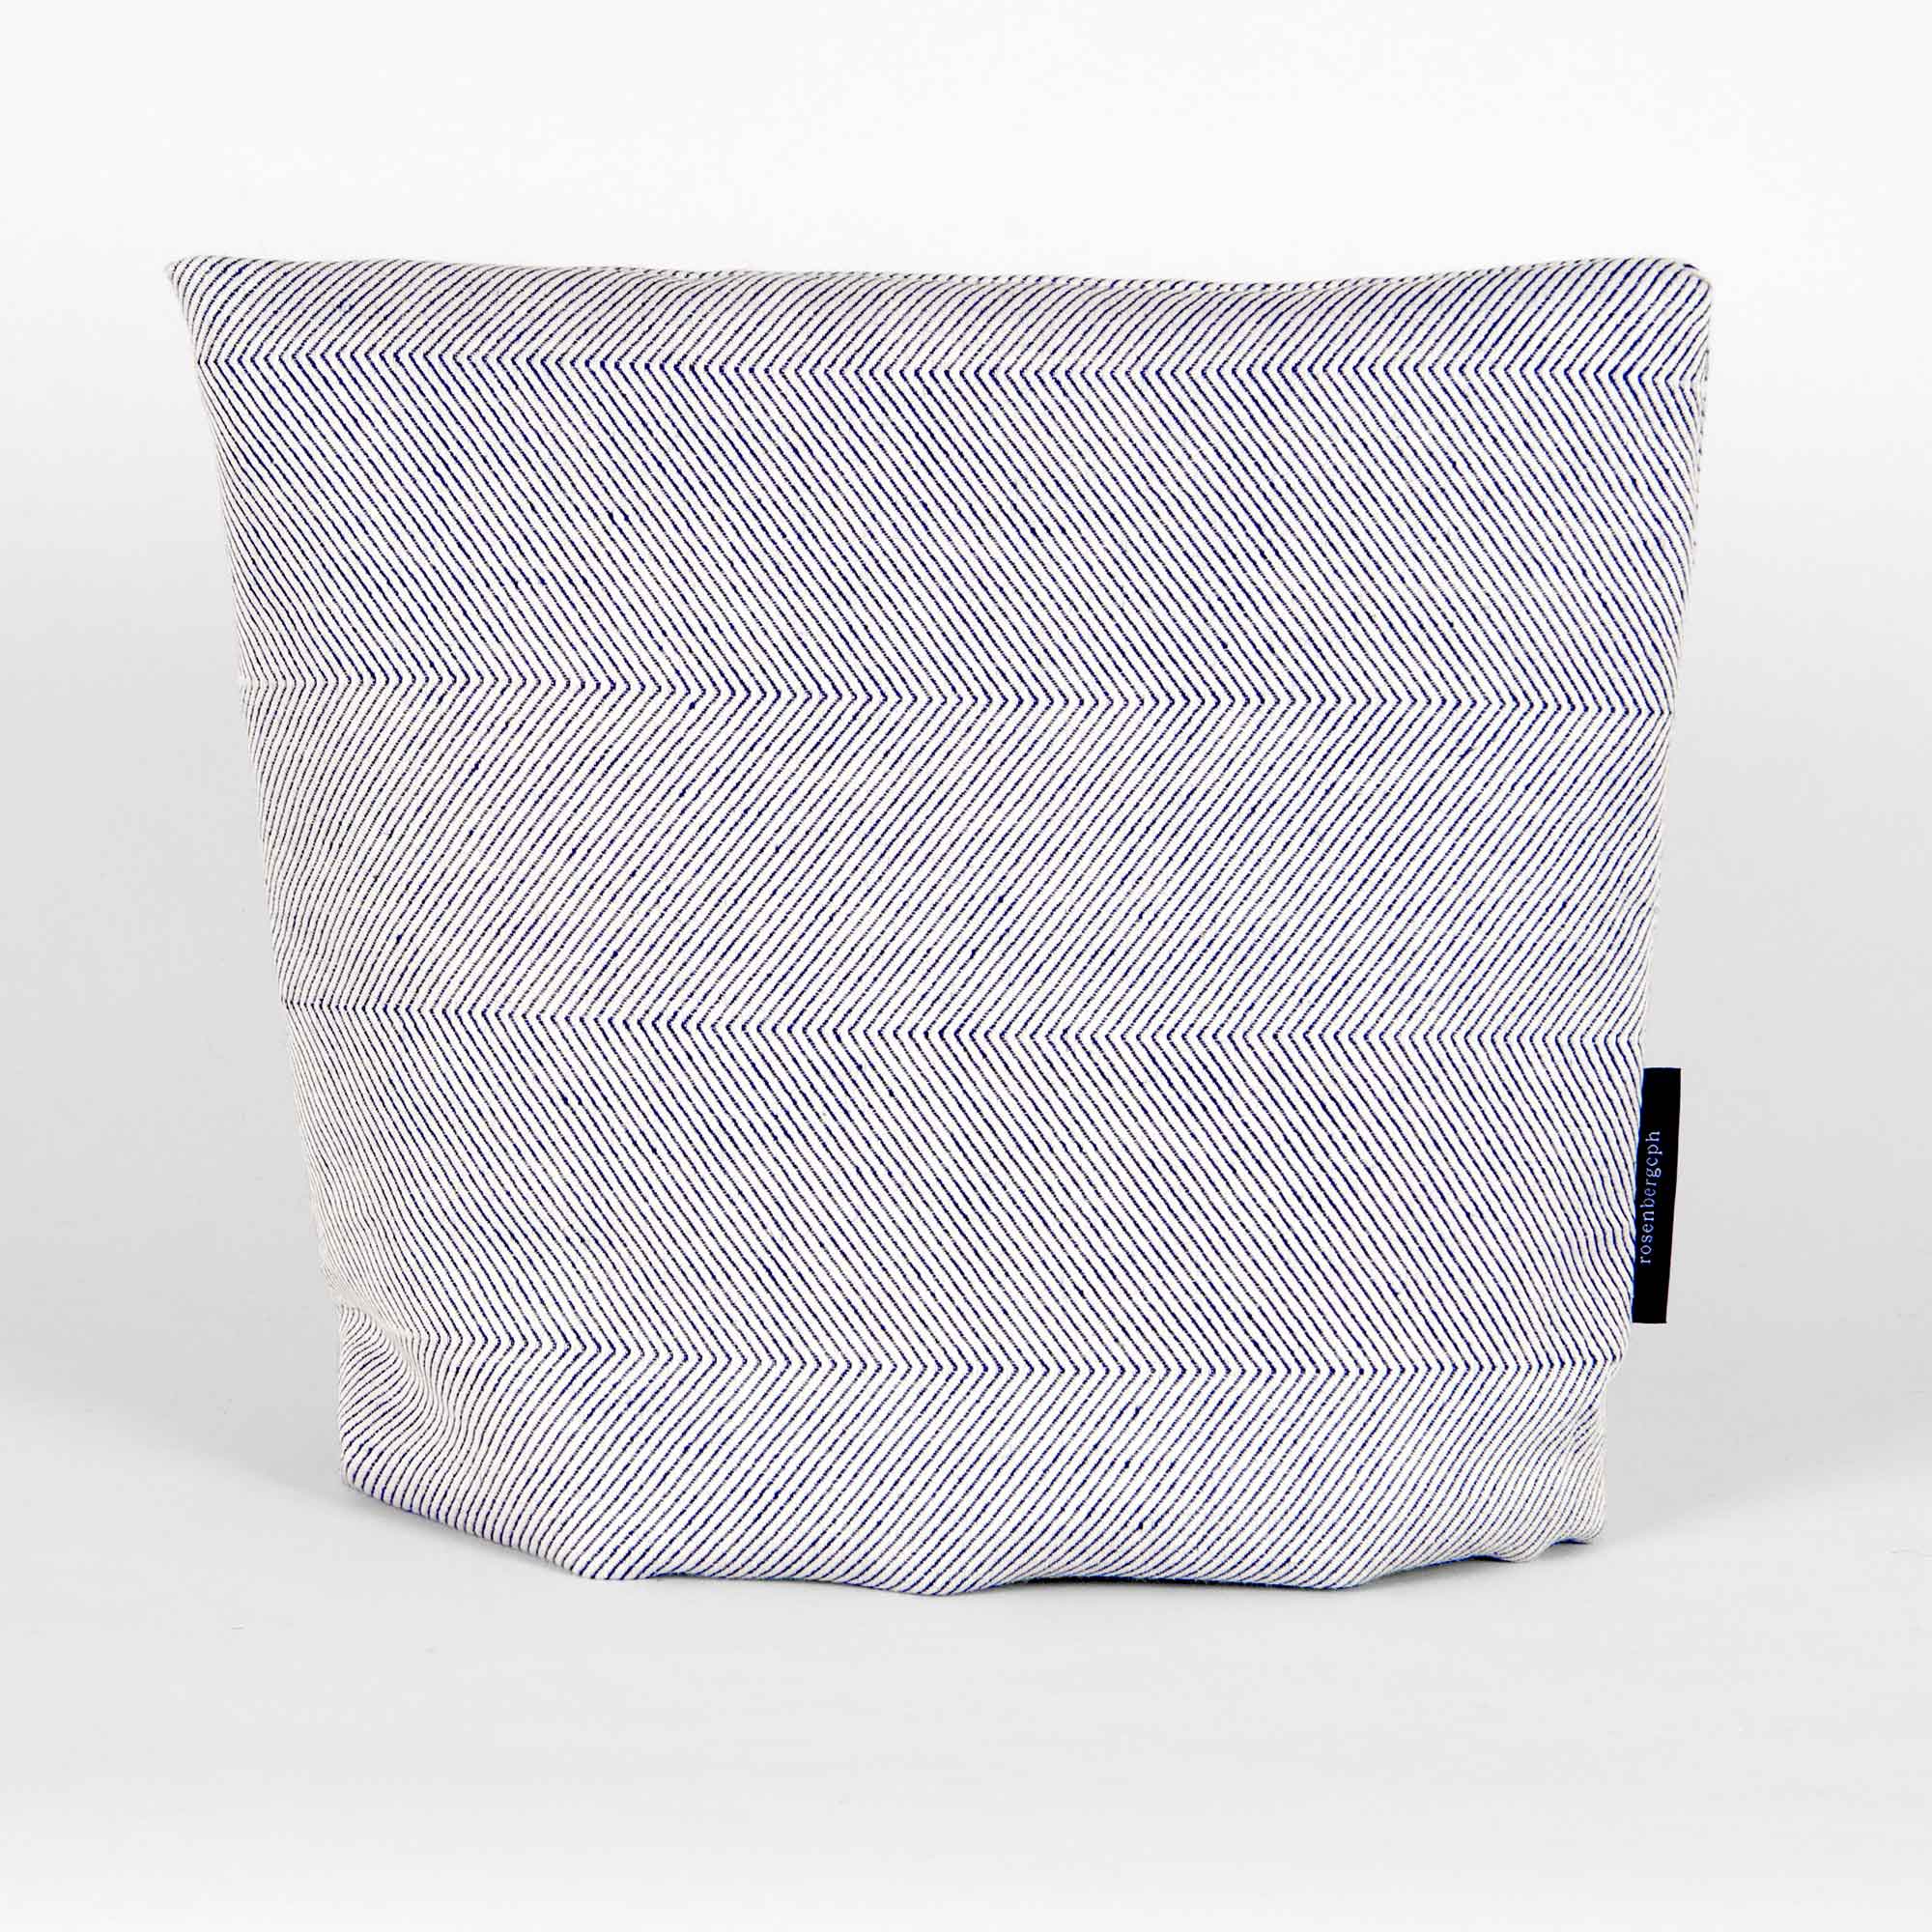 tea cosy, offwhite, linen/cotton, design by Anne Rosenberg, RosenbergCph